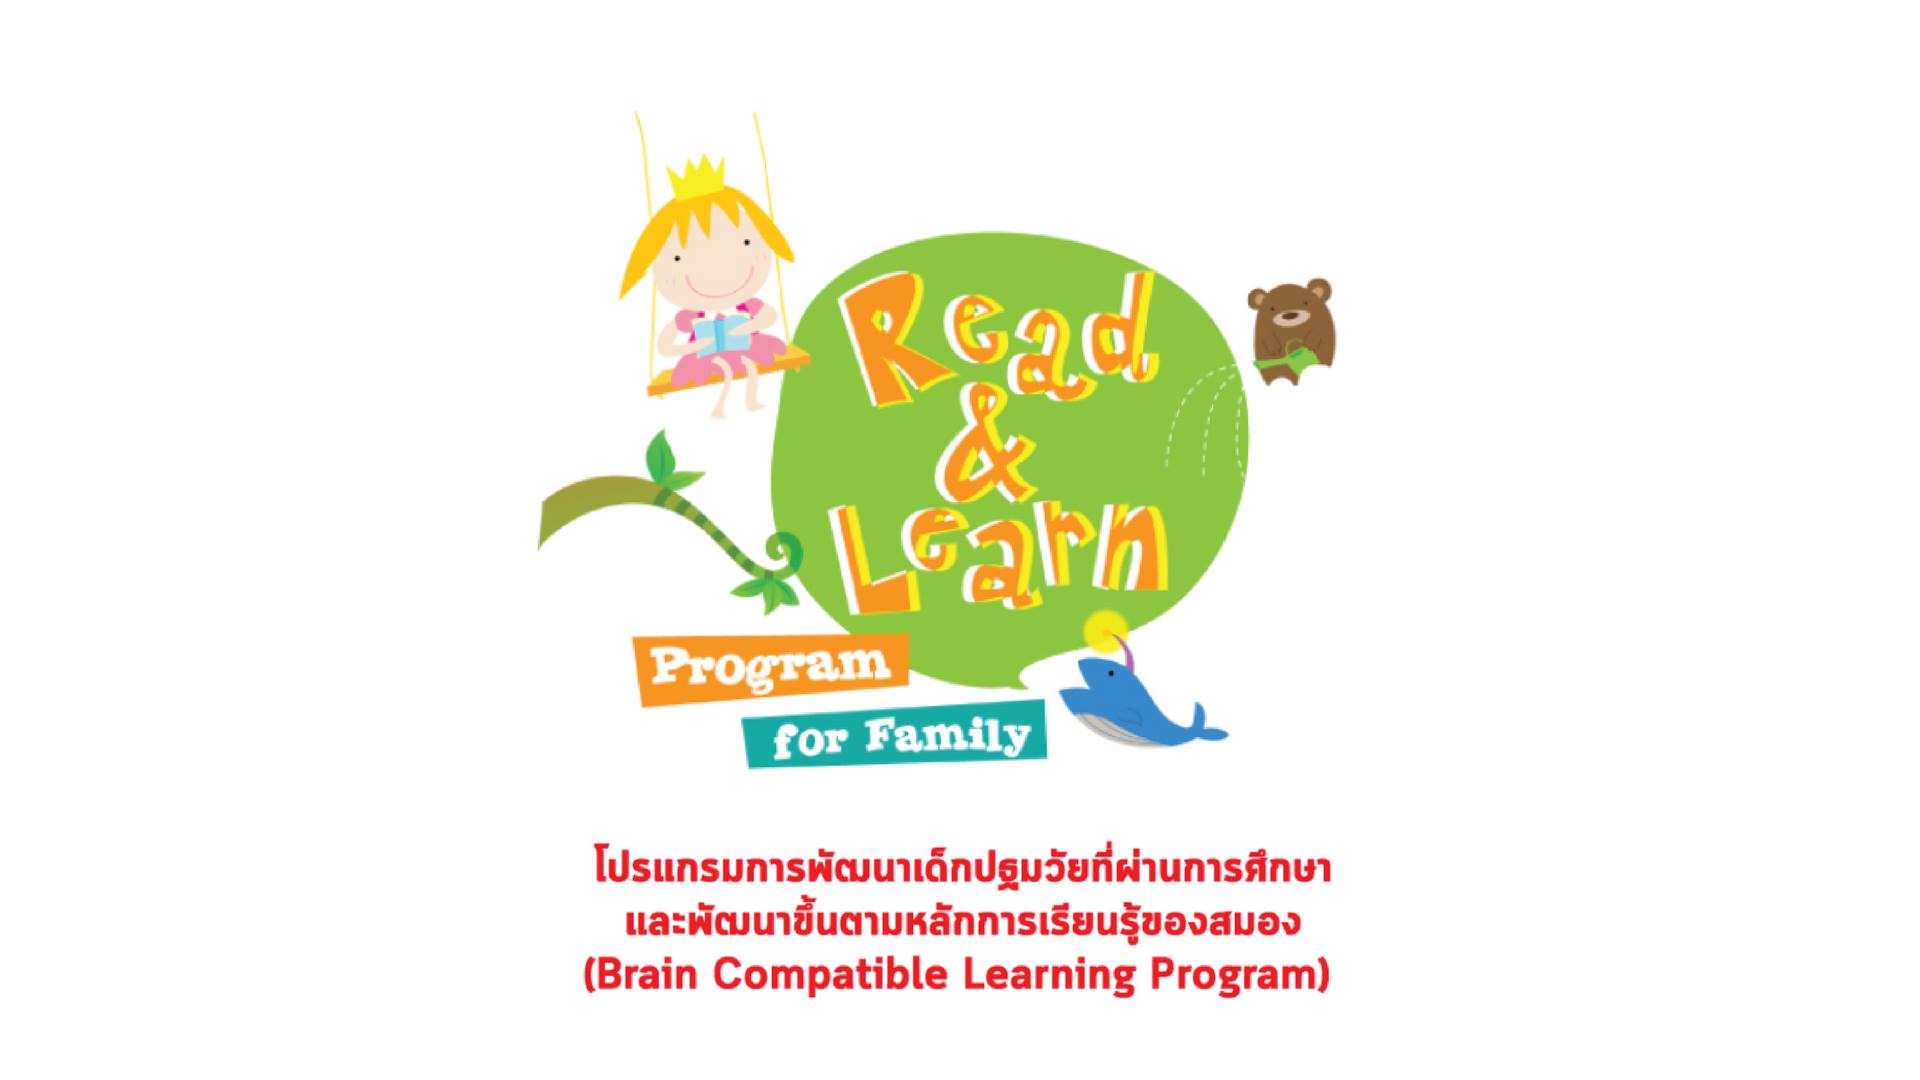 Read & Learn Program for Family ก.พ. 2561